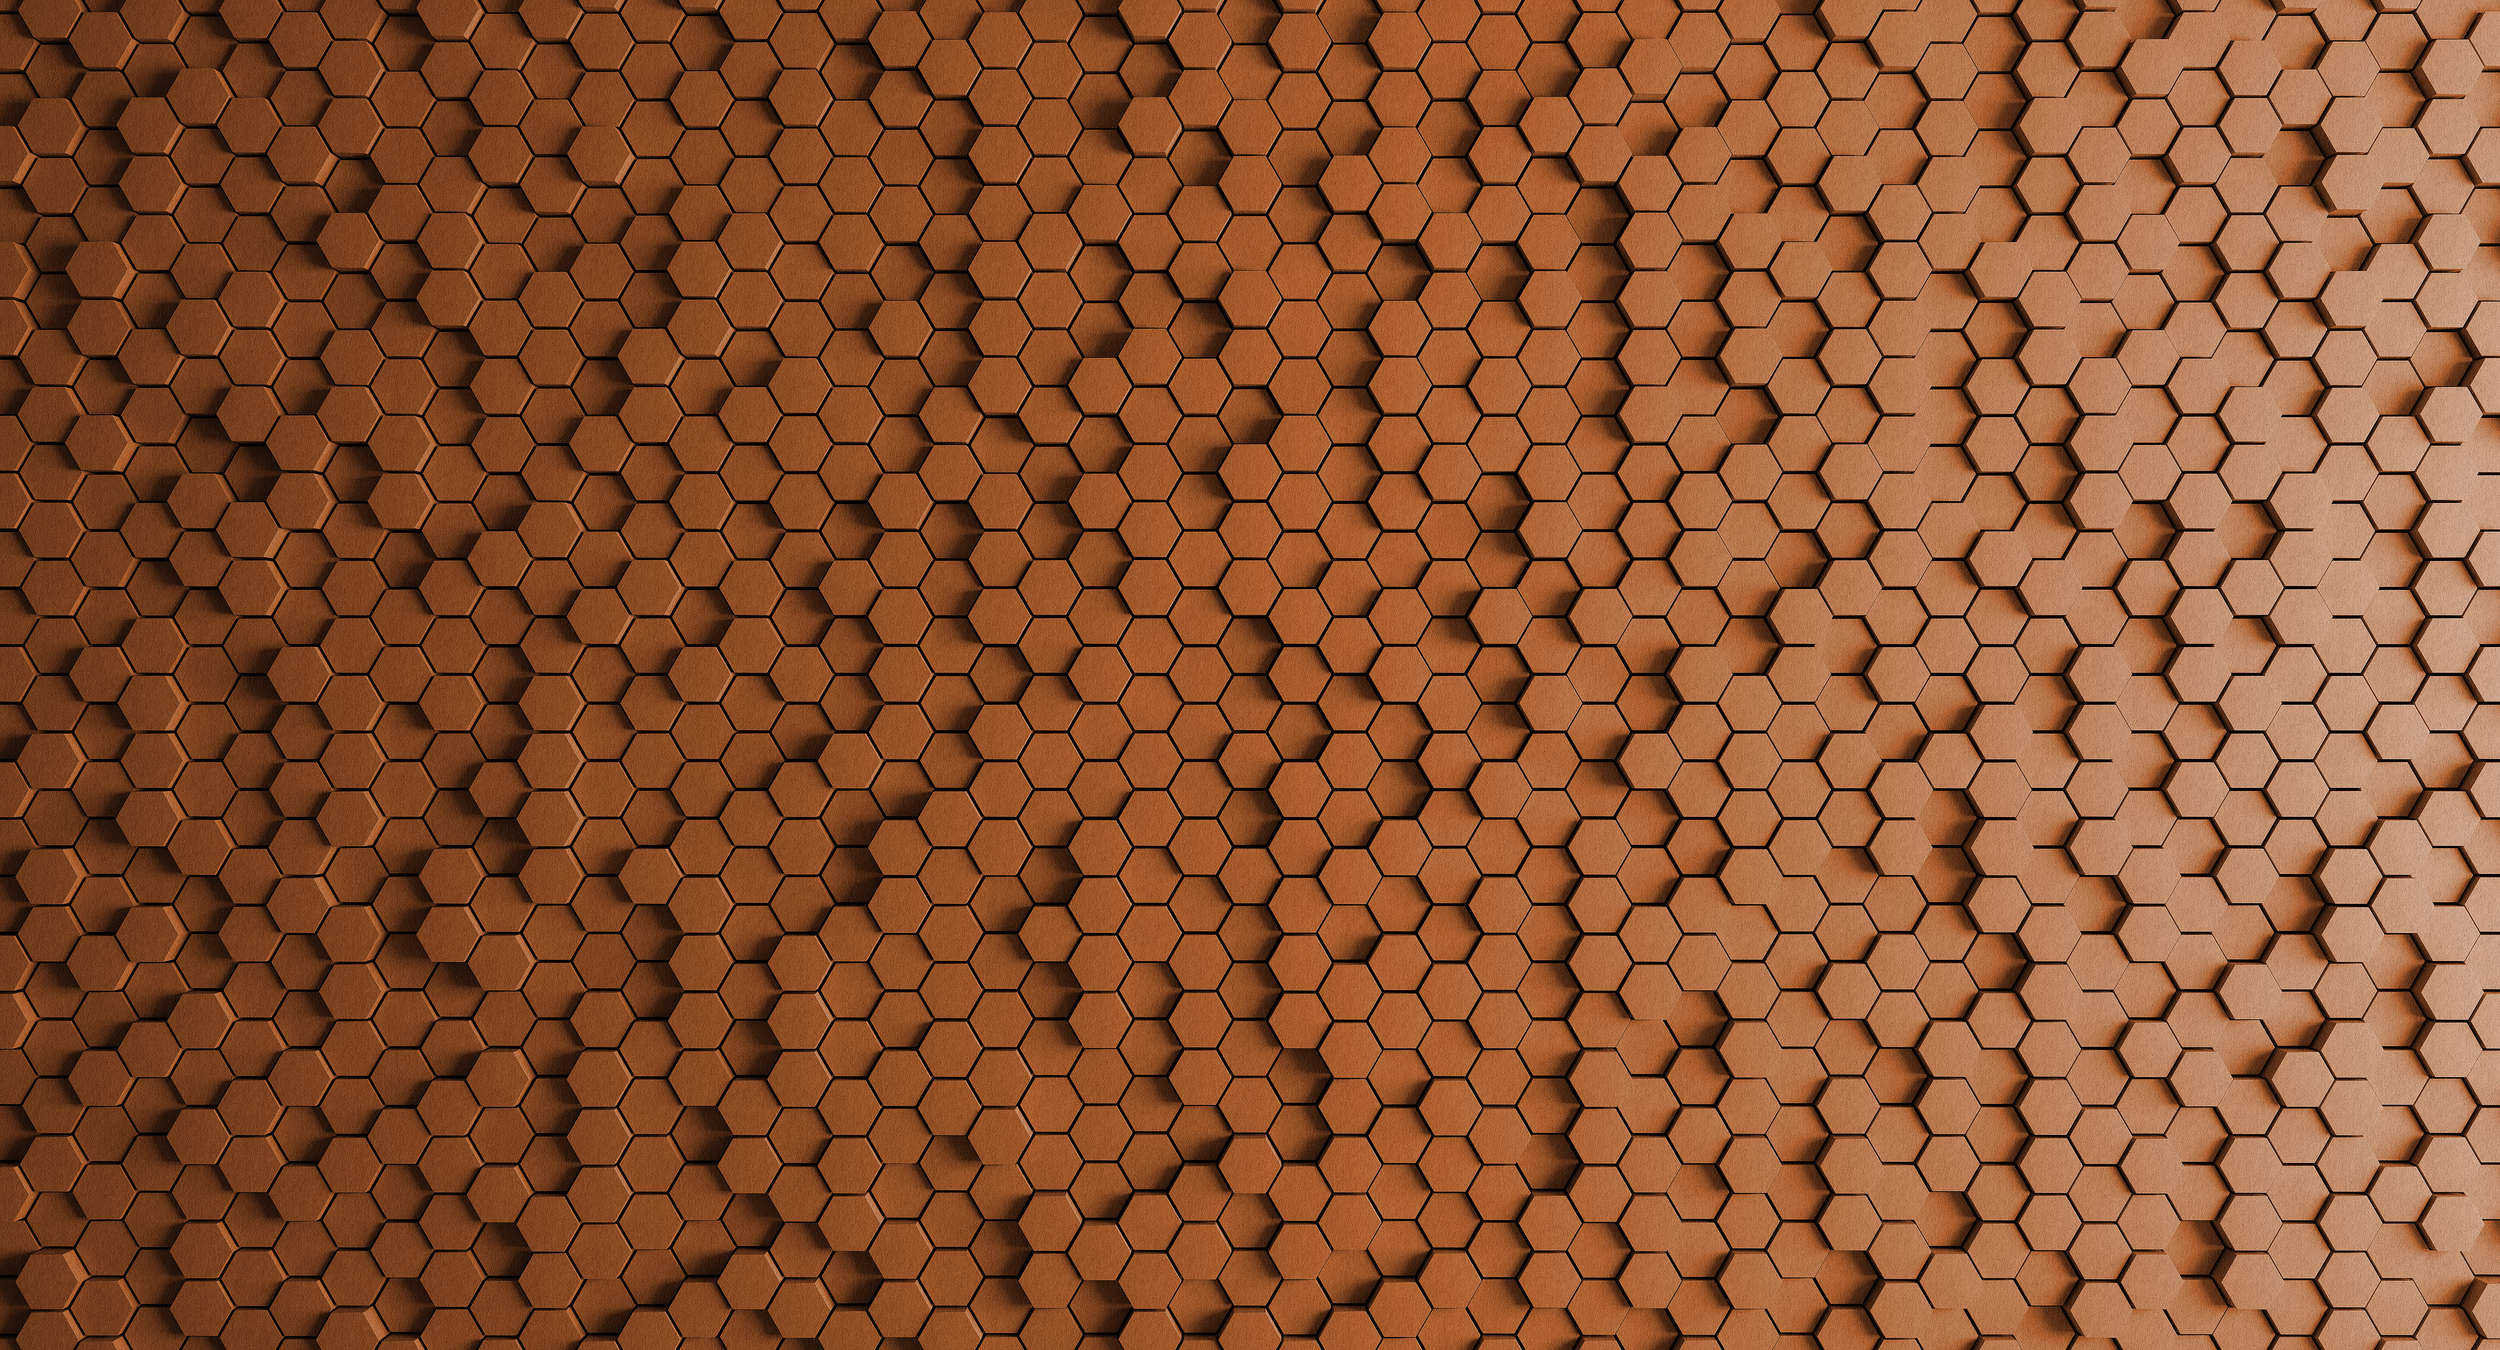             Honeycomb 2 - 3D wallpaper with orange honeycomb design - structure felt - copper, orange | matt smooth fleece
        